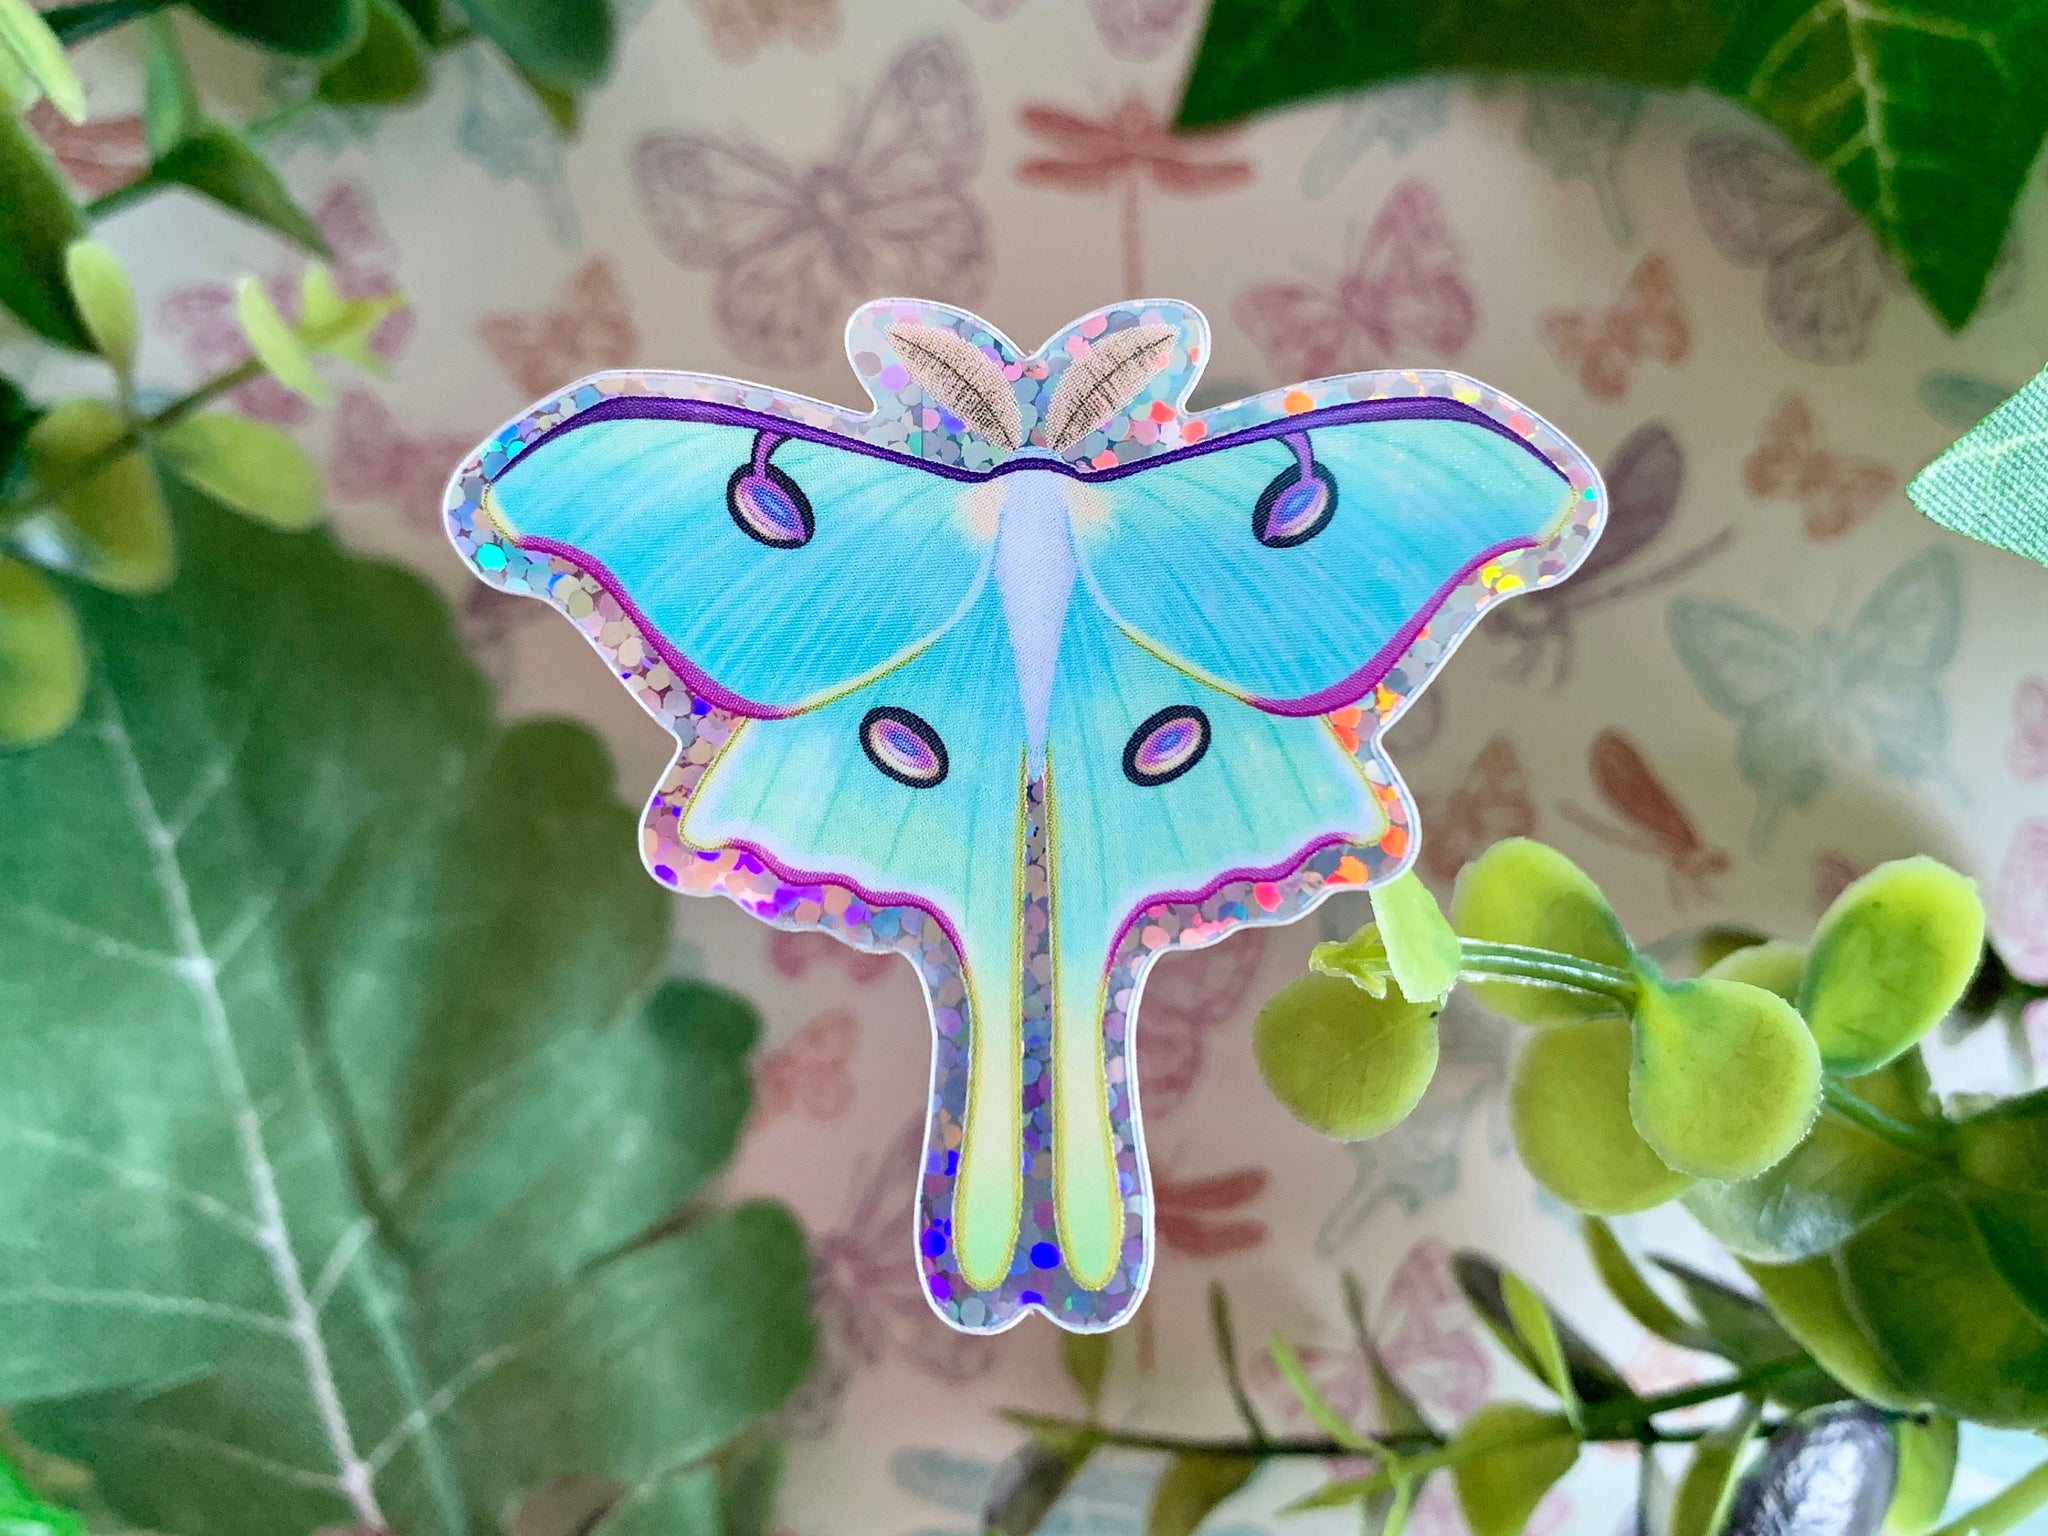 Holographic Luna Moth Sticker – Sipsey Wilder